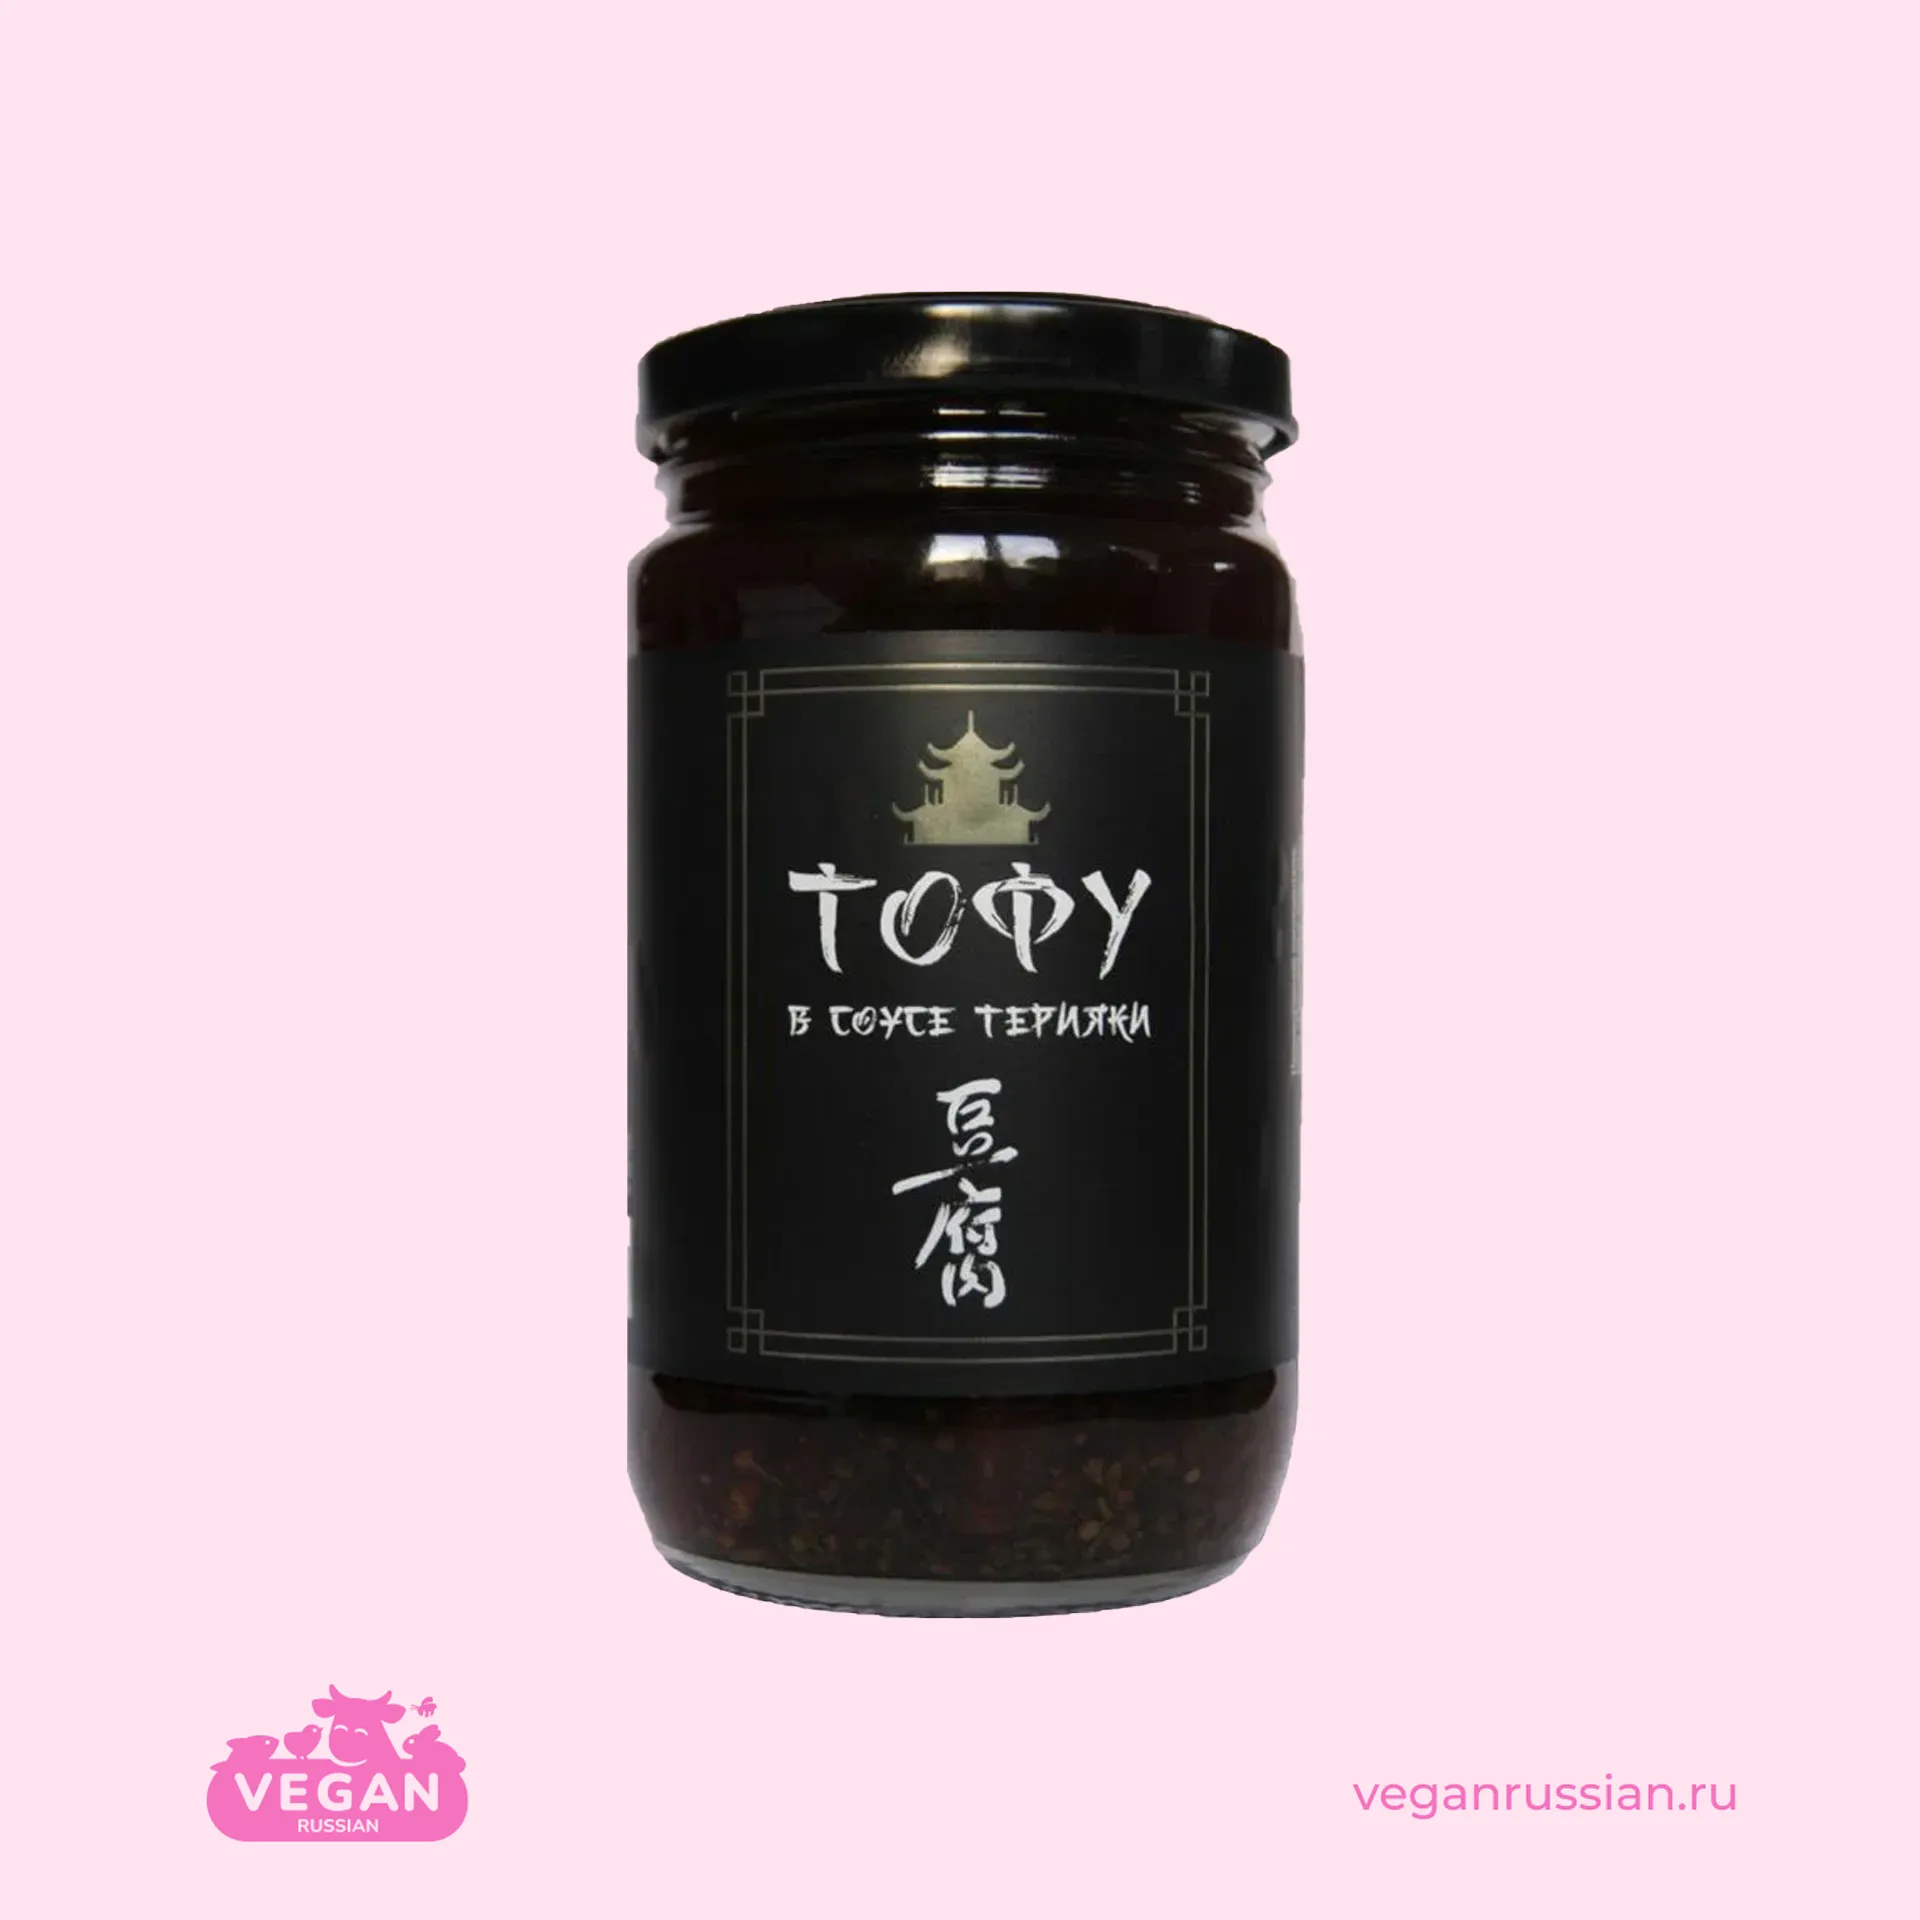 Тофу в соусе терияки Порционные продукты 350 г